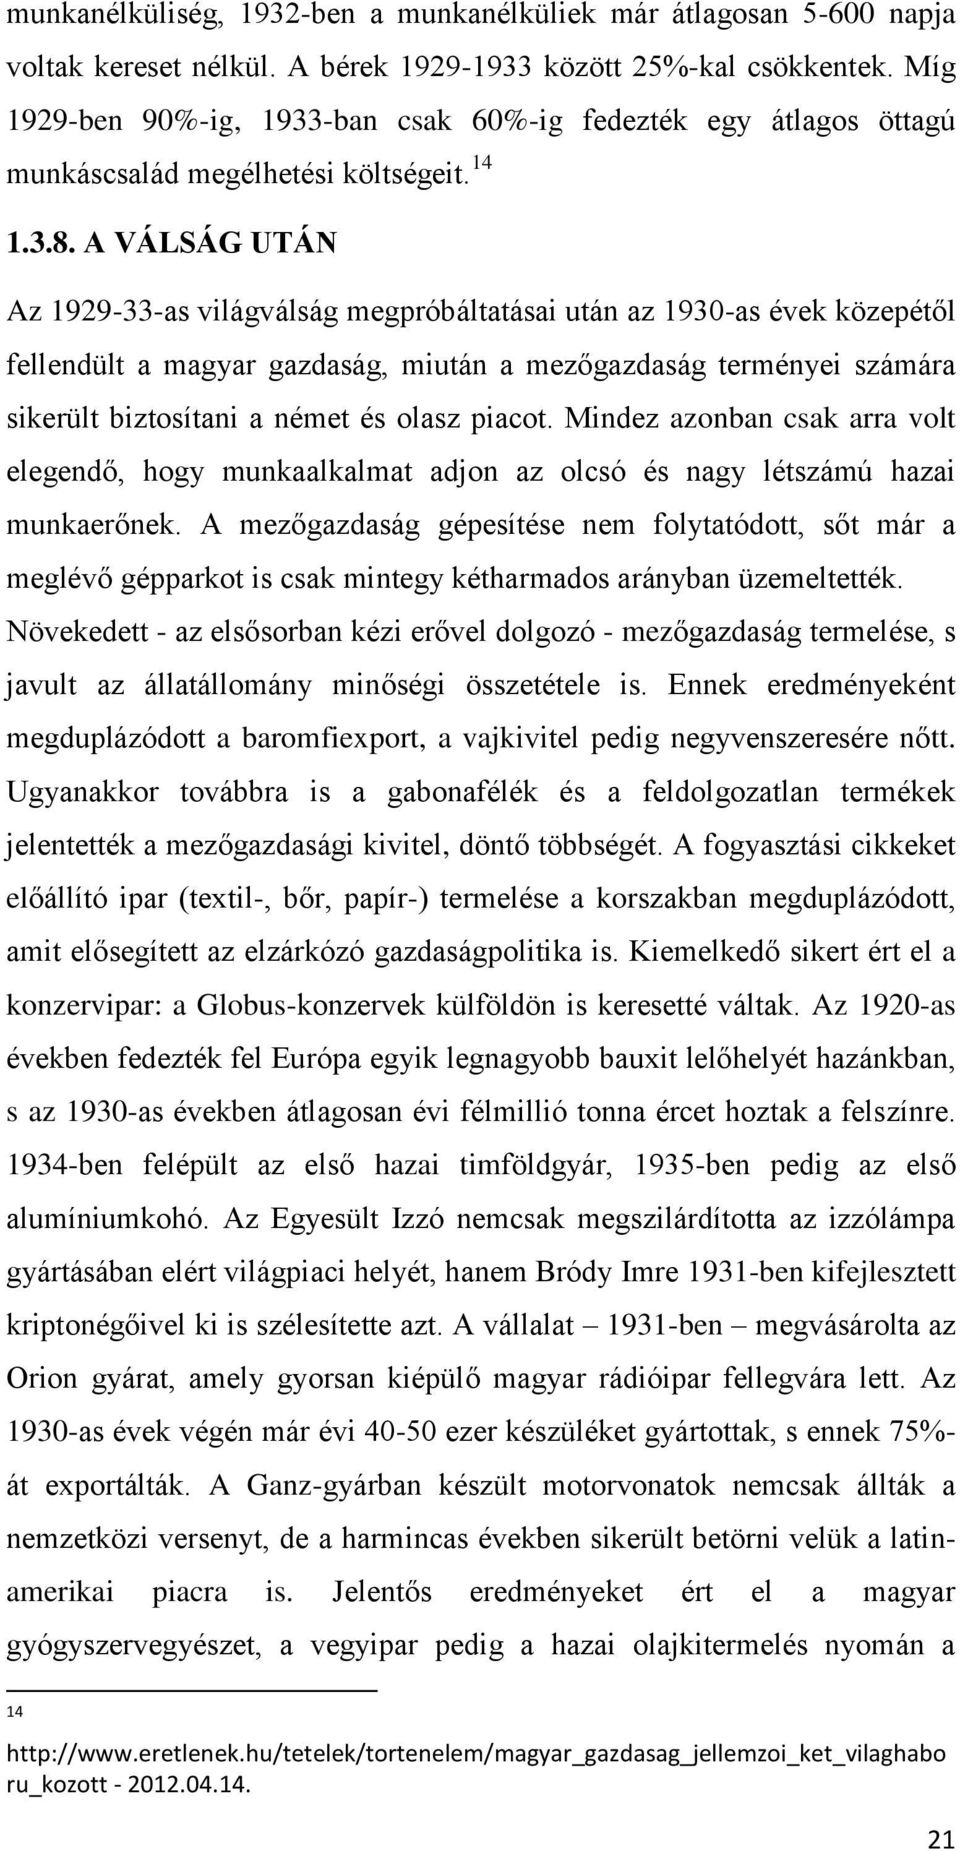 A VÁLSÁG UTÁN Az 1929-33-as világválság megpróbáltatásai után az 1930-as évek közepétől fellendült a magyar gazdaság, miután a mezőgazdaság terményei számára sikerült biztosítani a német és olasz